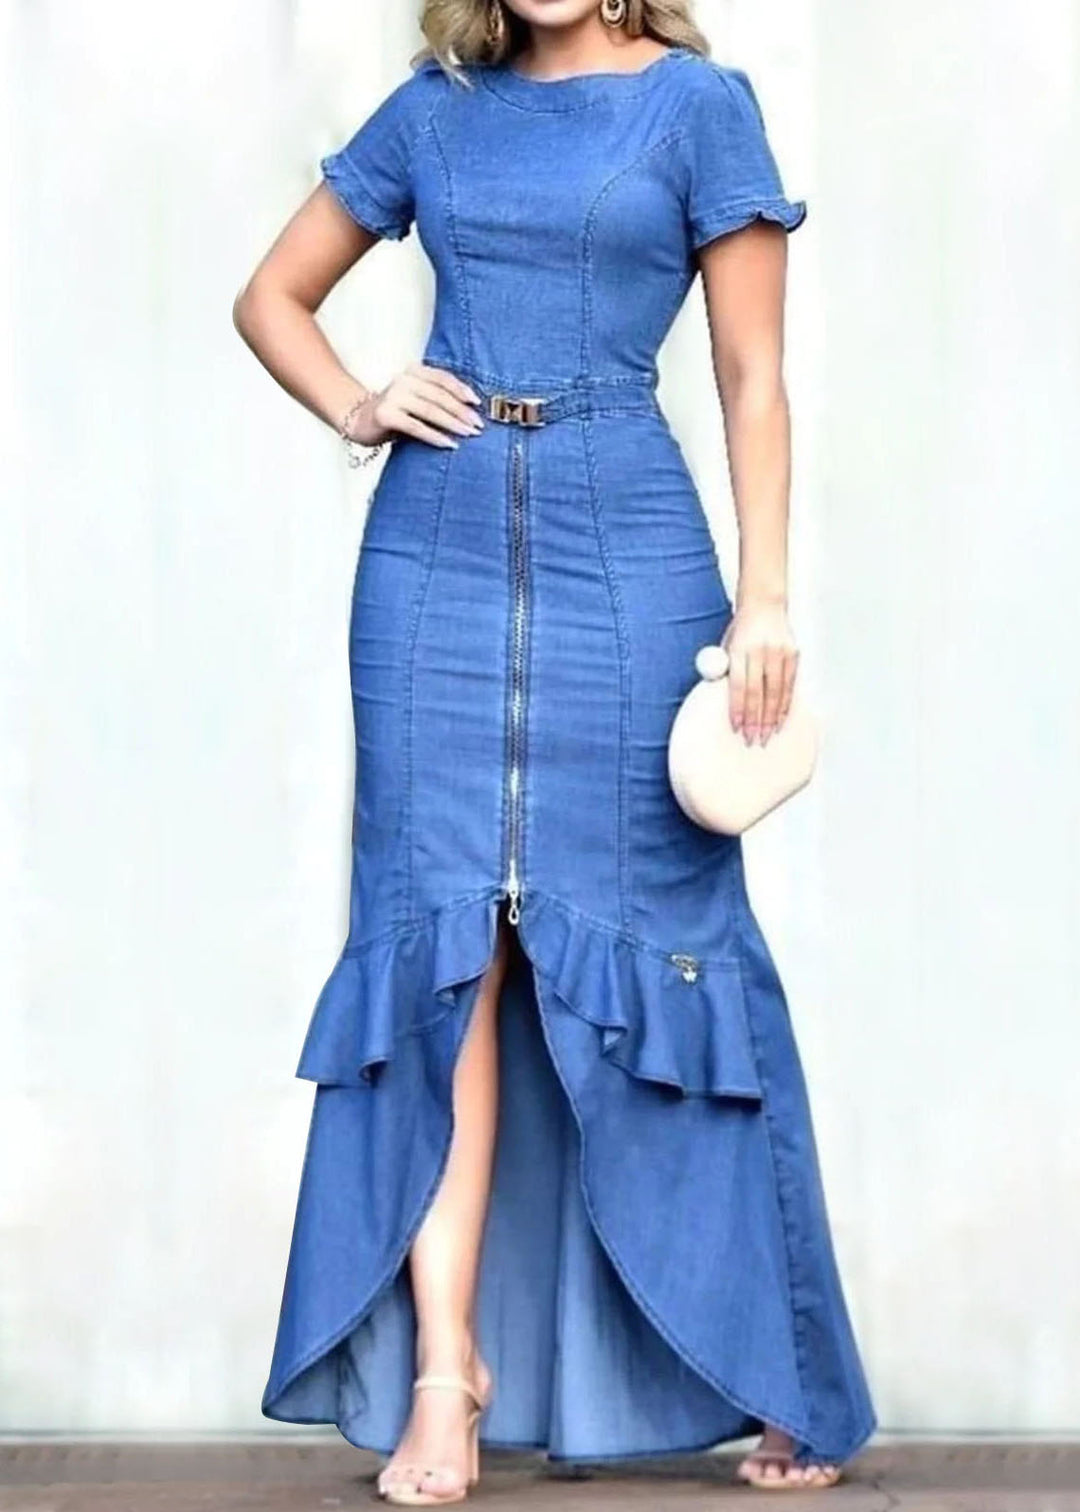 Fitted Blue Ruffled Zip Up Patchwork Denim Long Dress Summer